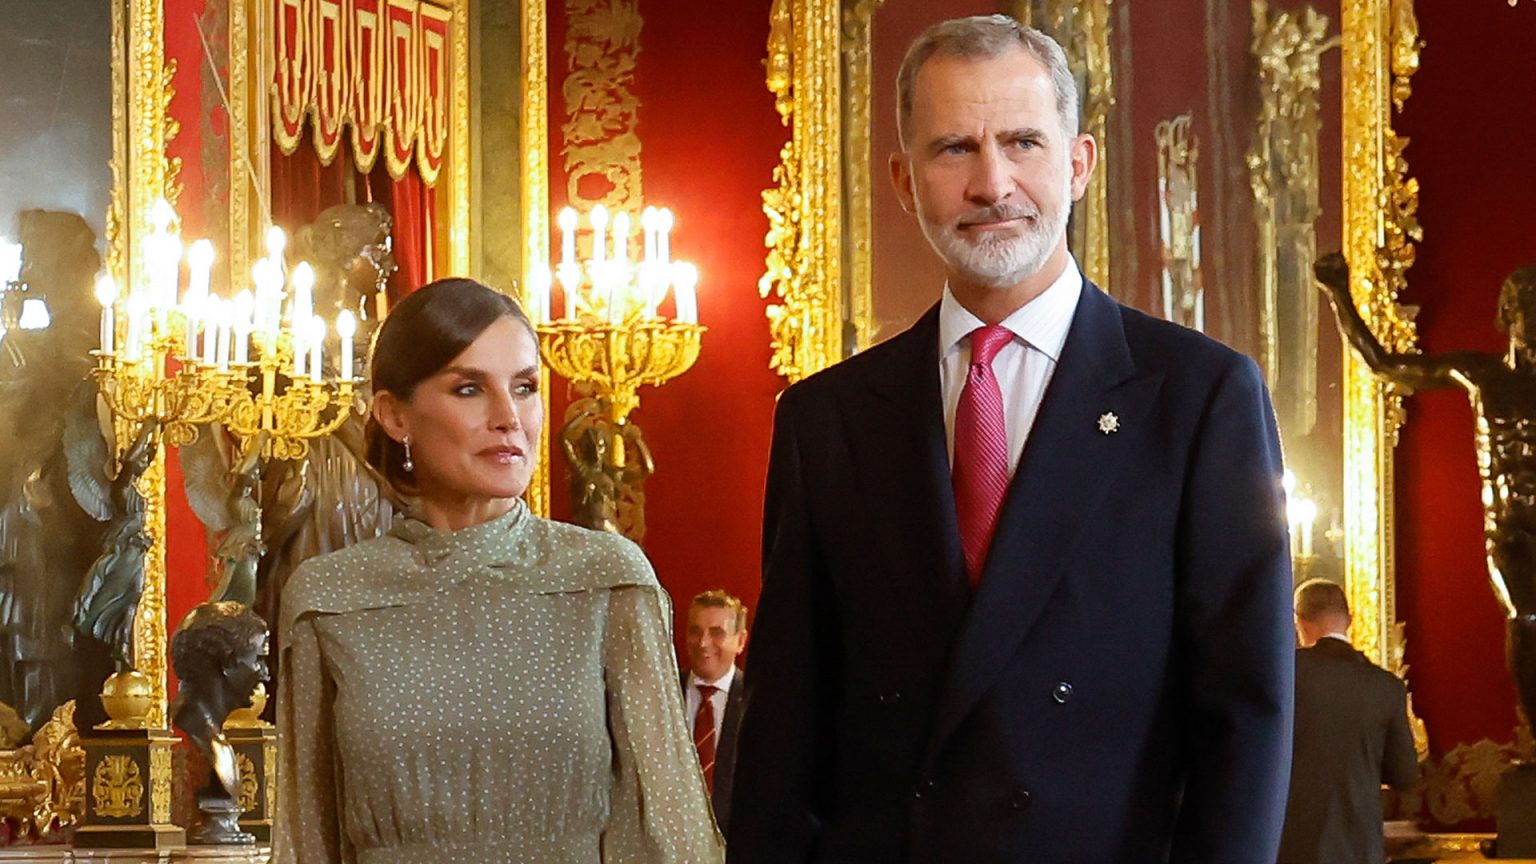 Cerveza fría, agua en vaso de cristal y un exclusivo menú: lo que degustaron Felipe, Letizia y sus invitados en el Palacio Real